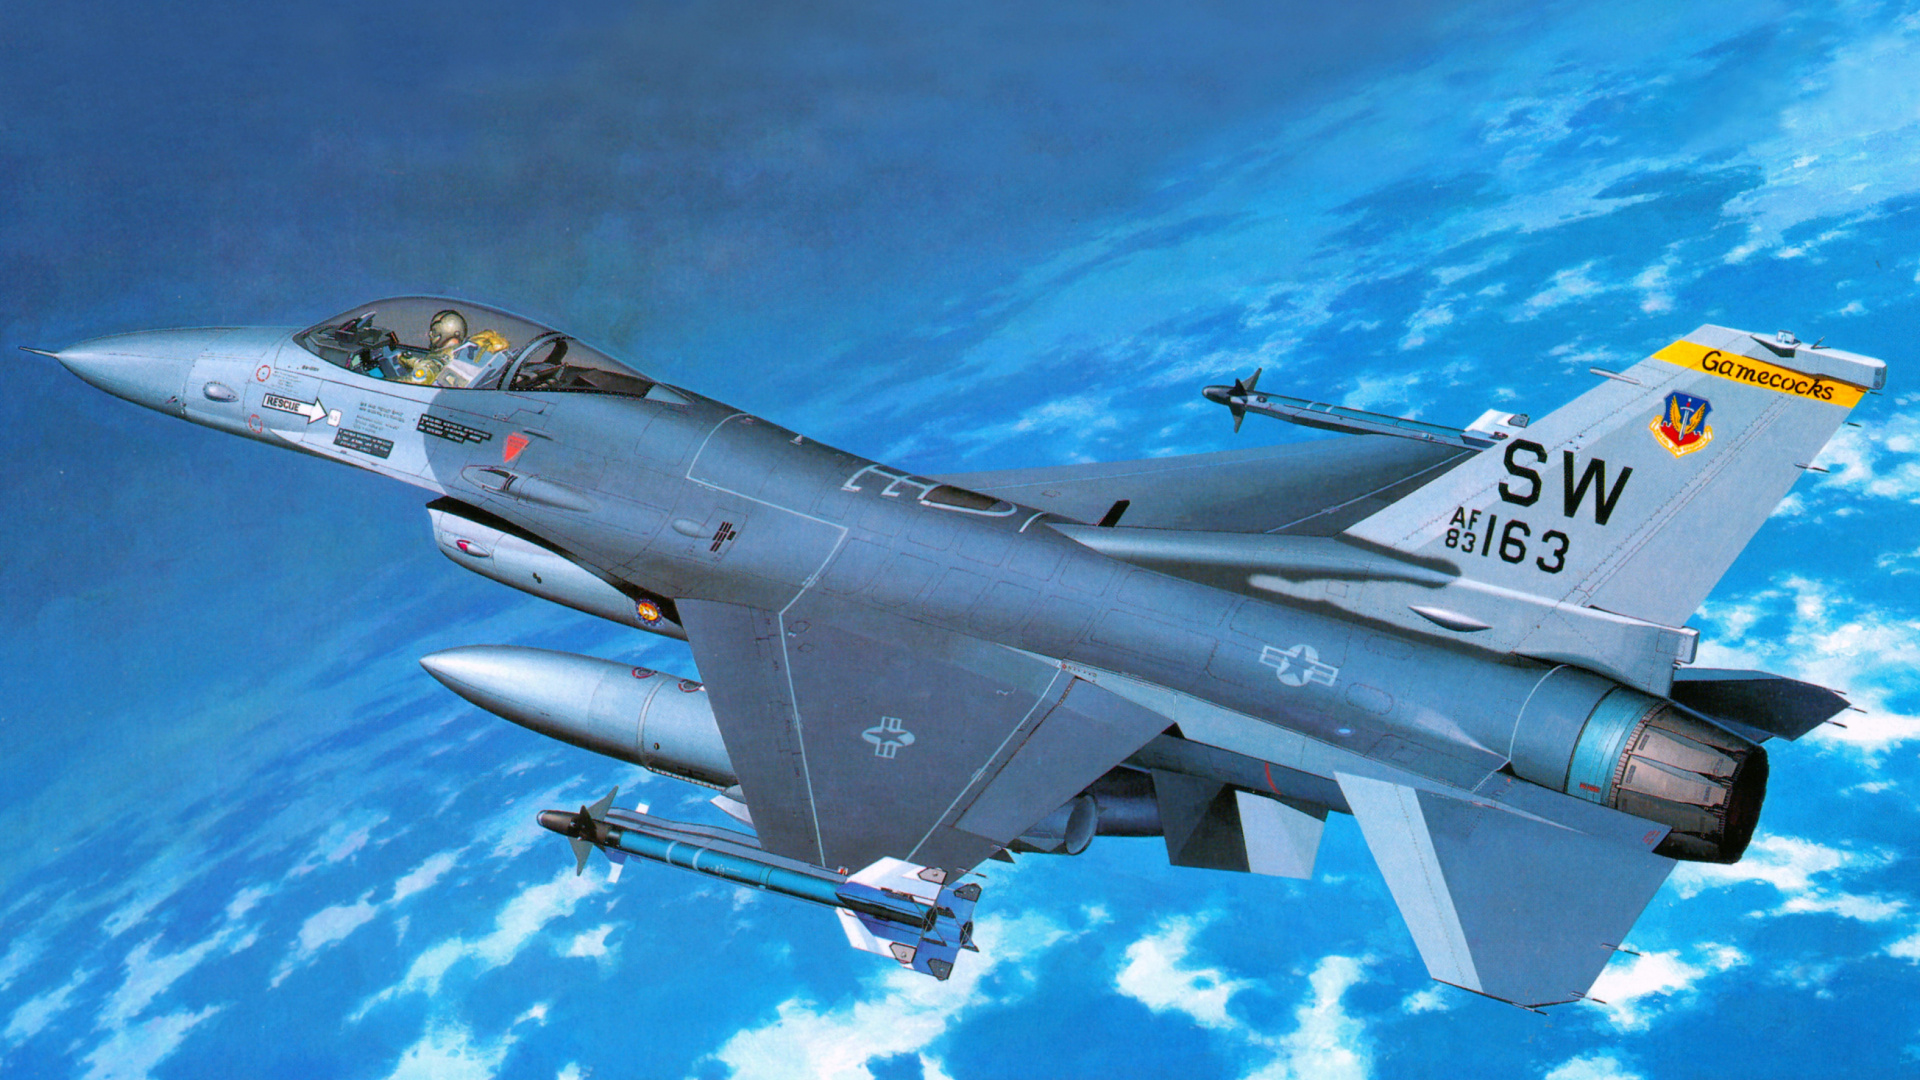 长谷川公司, 塑料模型, 军用飞机, 航空, 空军 壁纸 1920x1080 允许